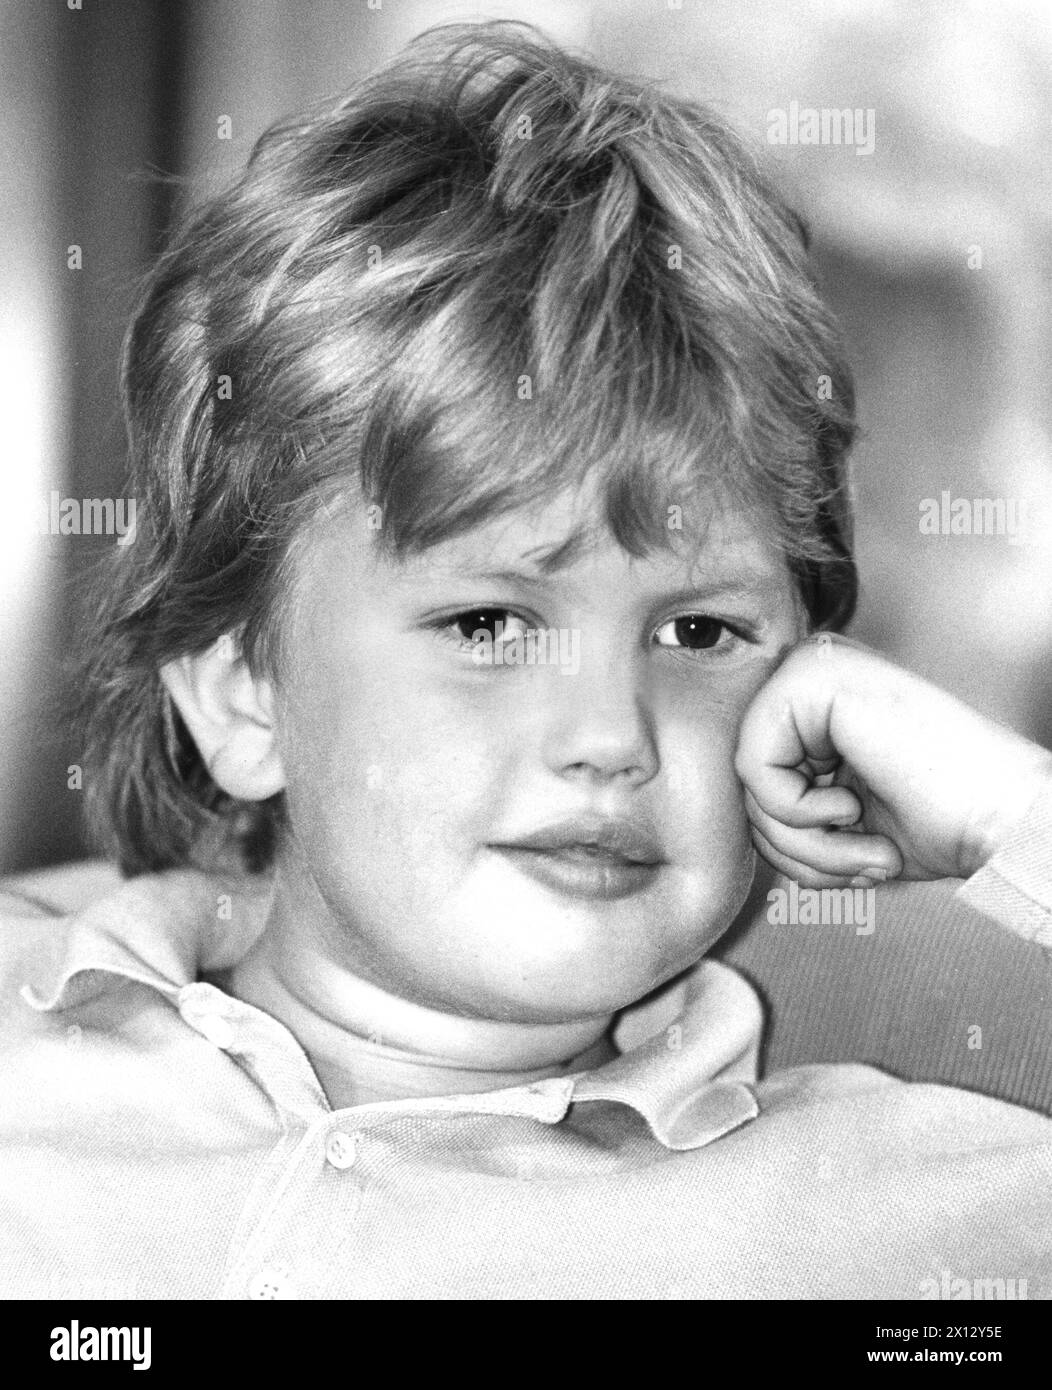 Vienna il 27 settembre 1989: La Junior star Dominik Klaschke (10) rappresenterà l'Austria al Gala dell'UNICEF a Schevenigen, nei Paesi Bassi, con la sua canzone "Soundless Cries the Butterfly". - 19860522 PD0021 - Rechteinfo: Diritti gestiti (RM) Foto Stock